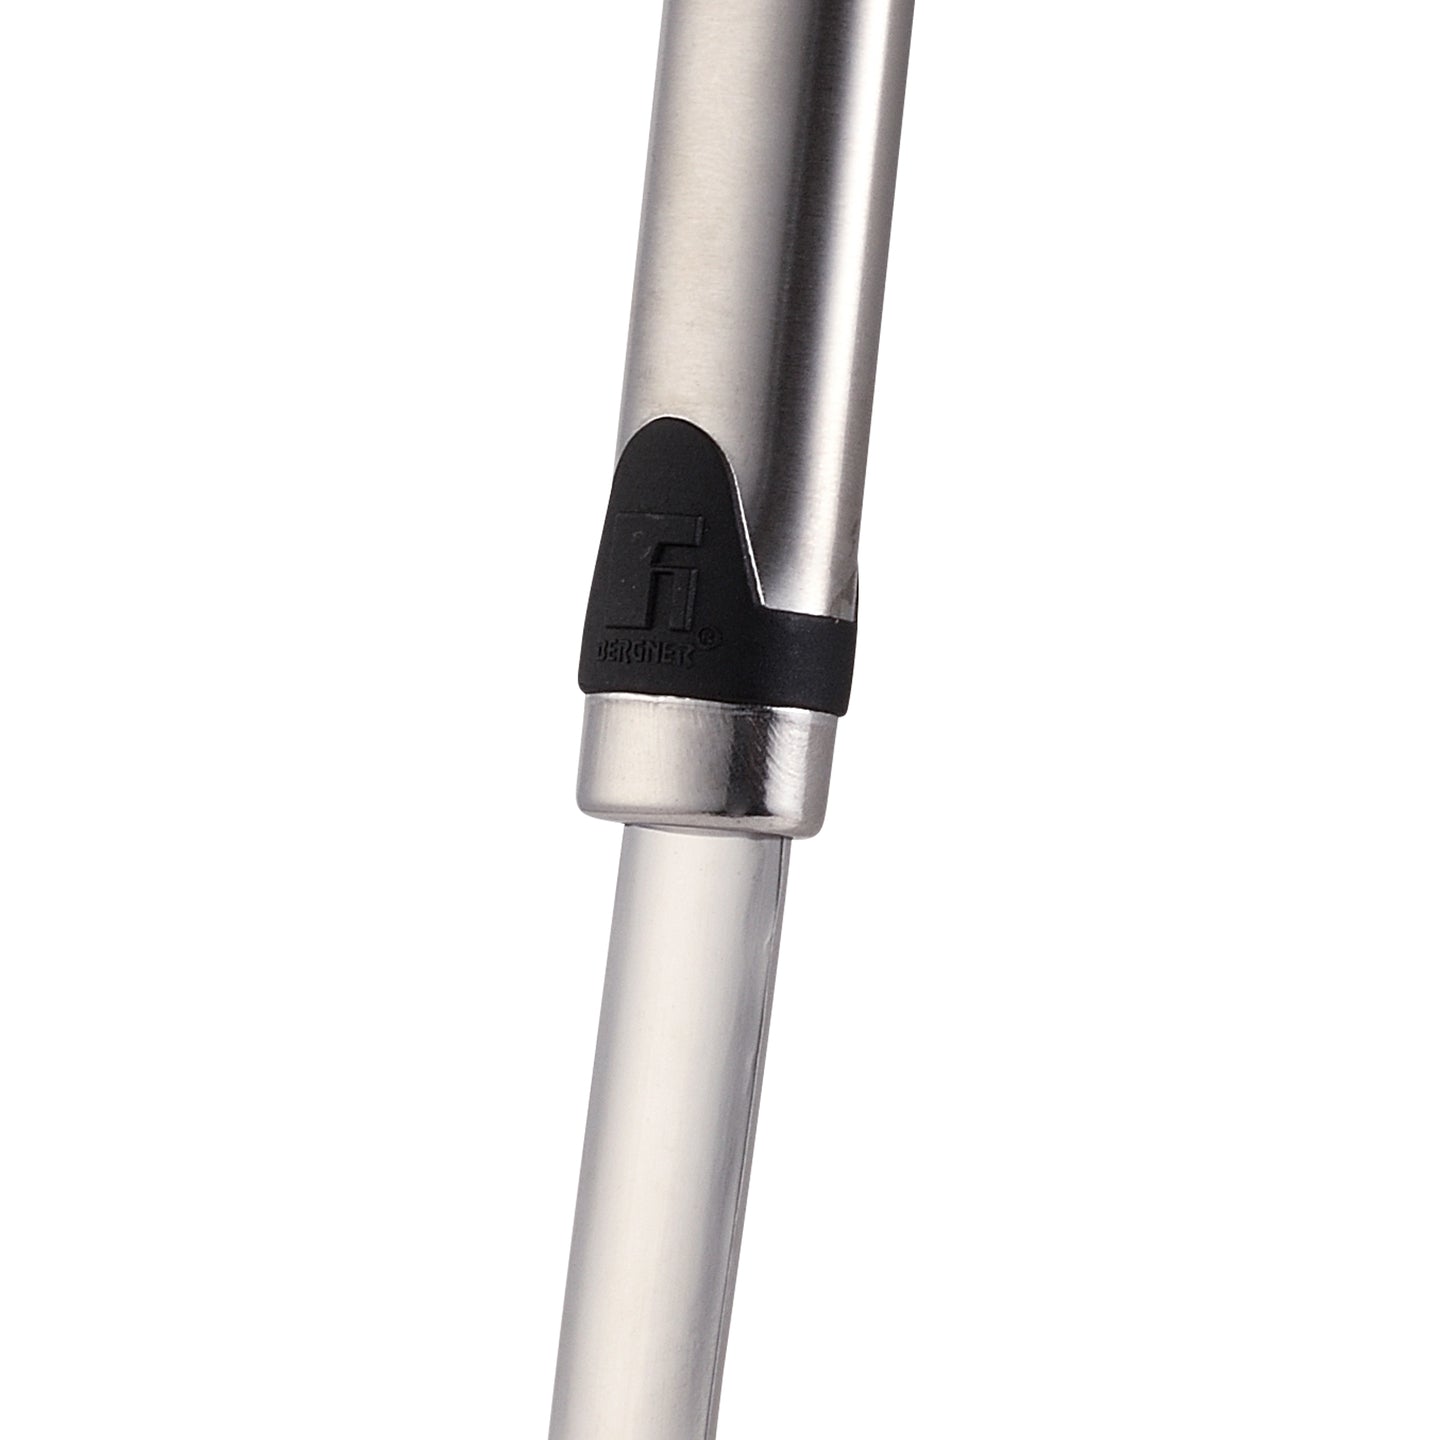 Tenedor trinchador Bergner 35 cm - Gizmo (2)